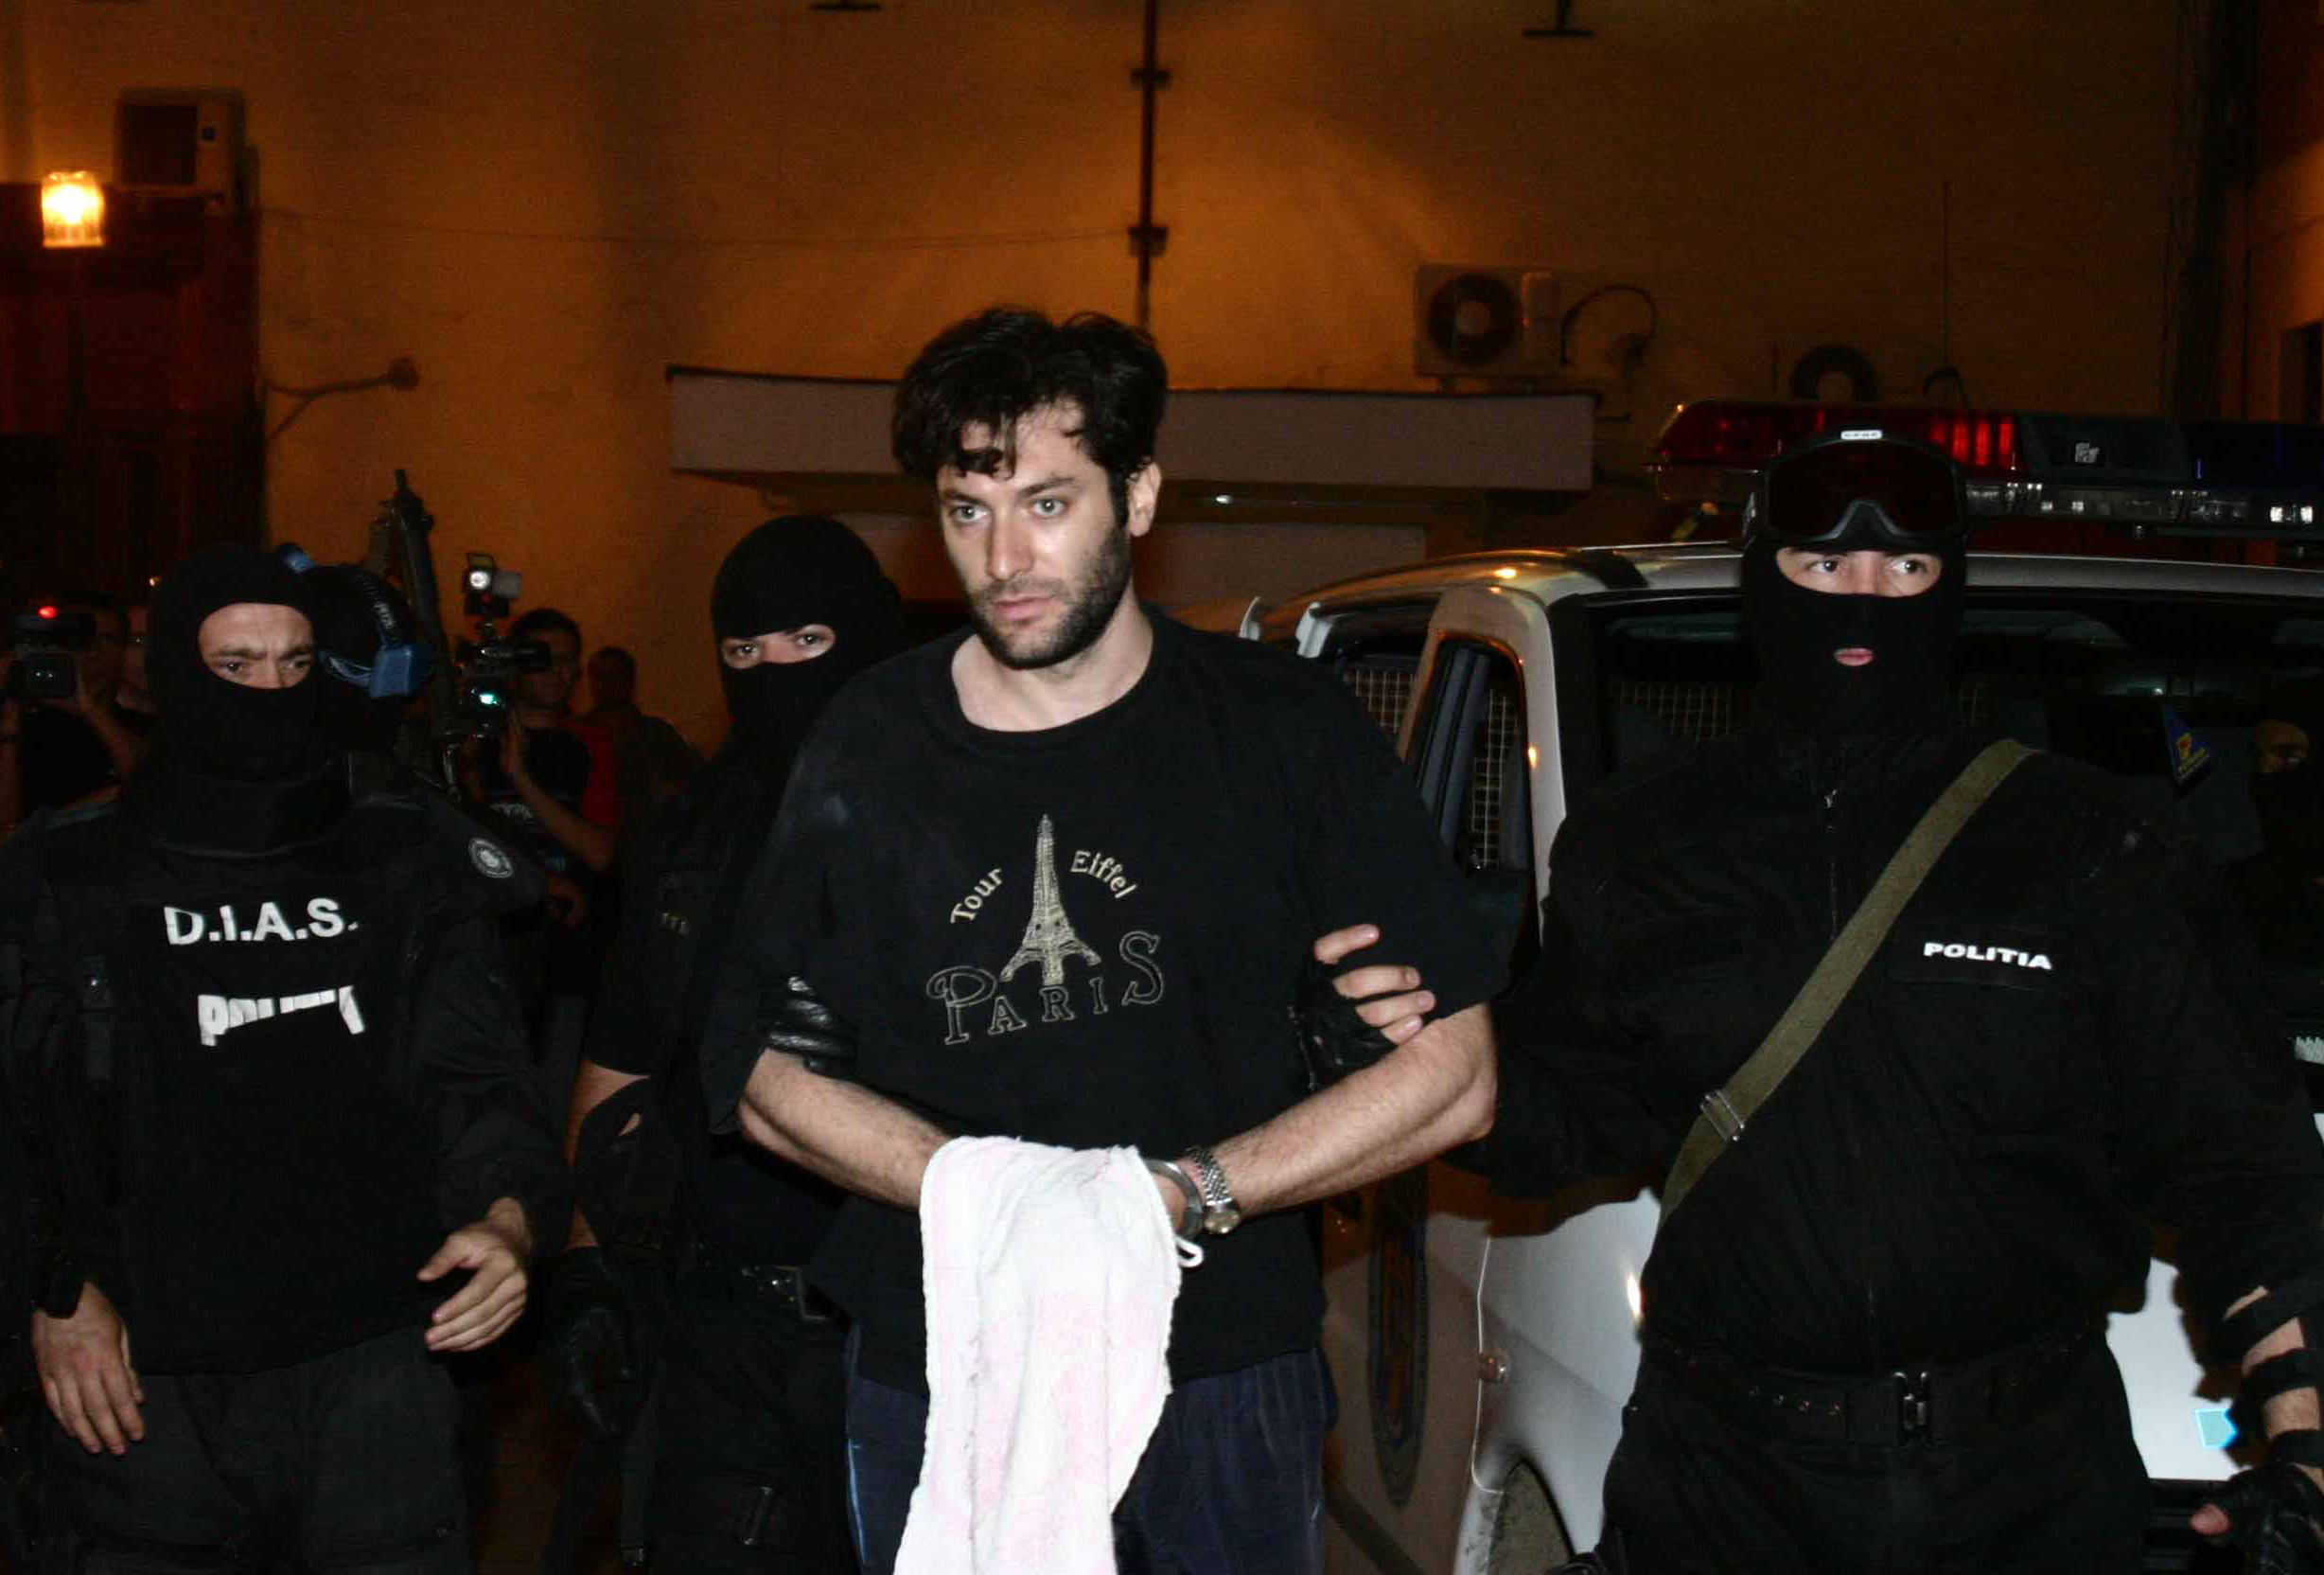 Petru Nica a fost arestat la scurt timp dupa jaf